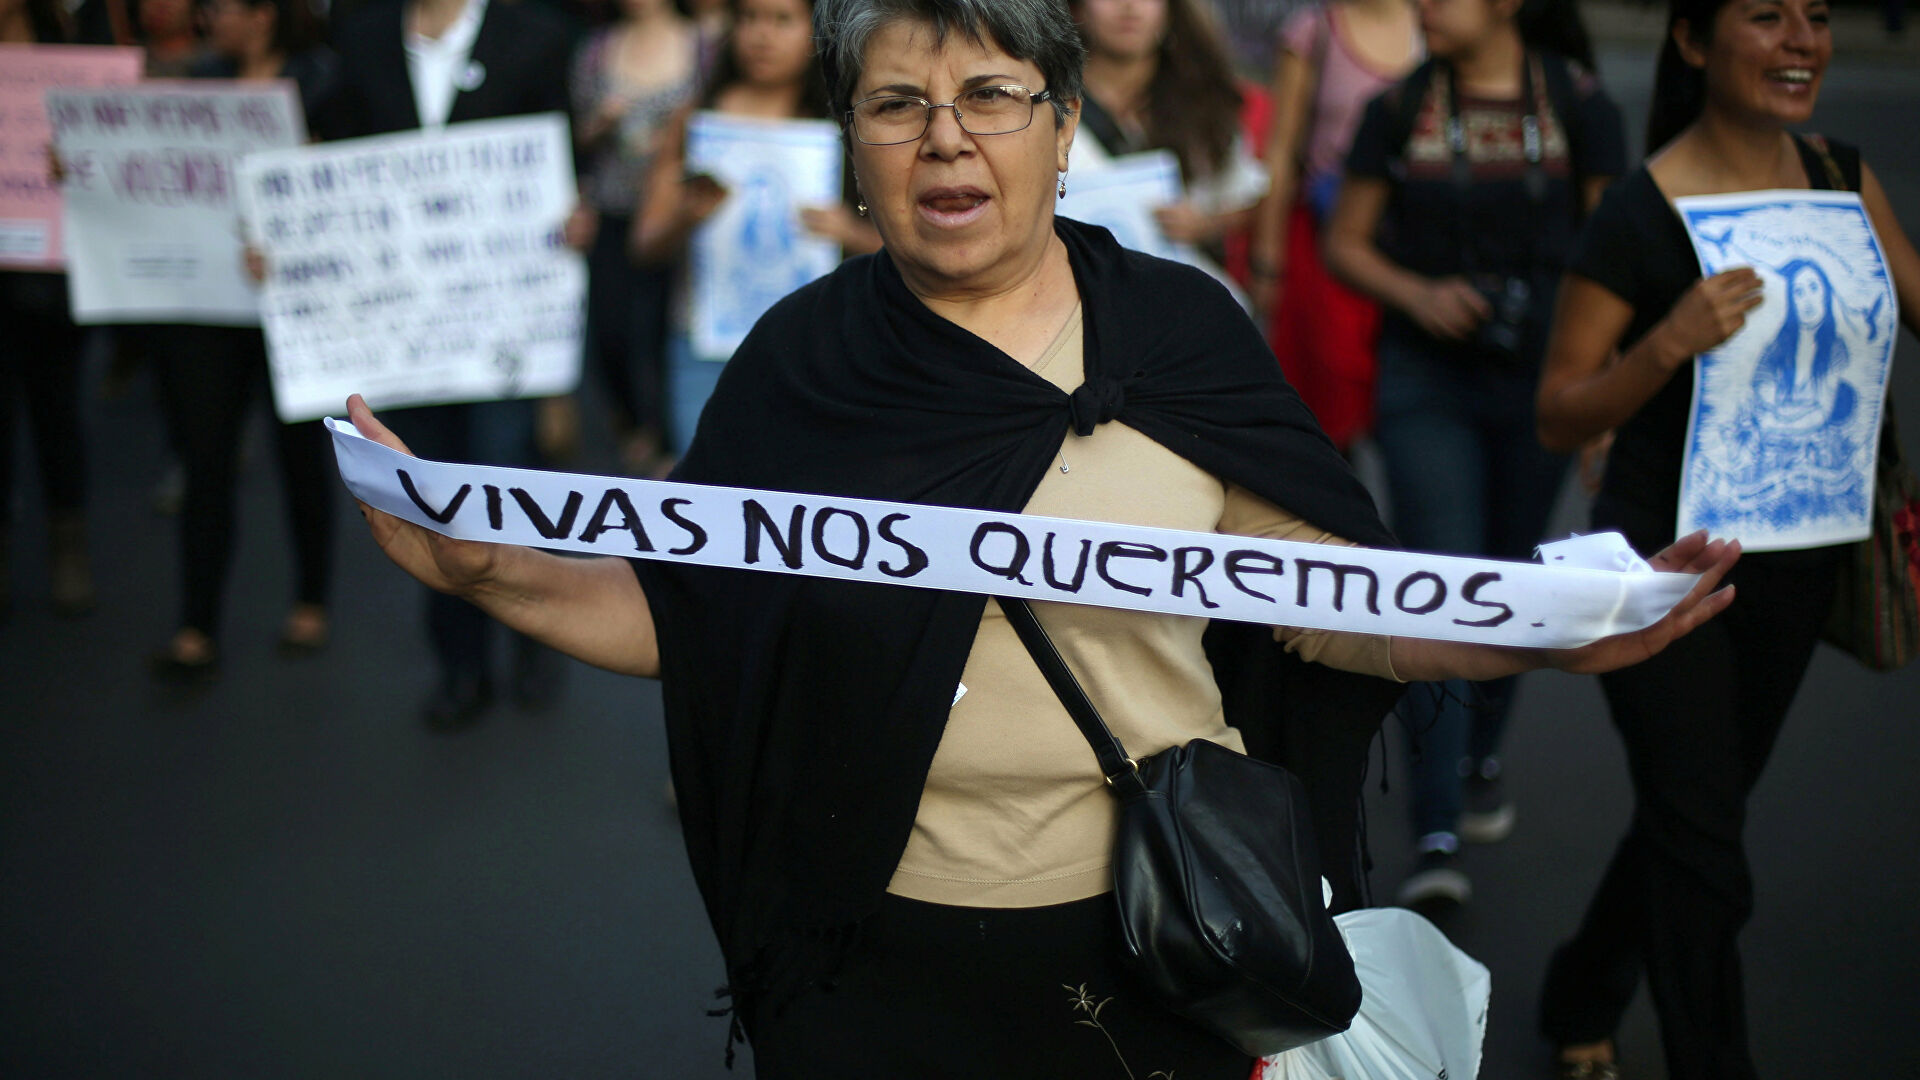  La violencia machista retratada en 4 femicidios latinoamericanos